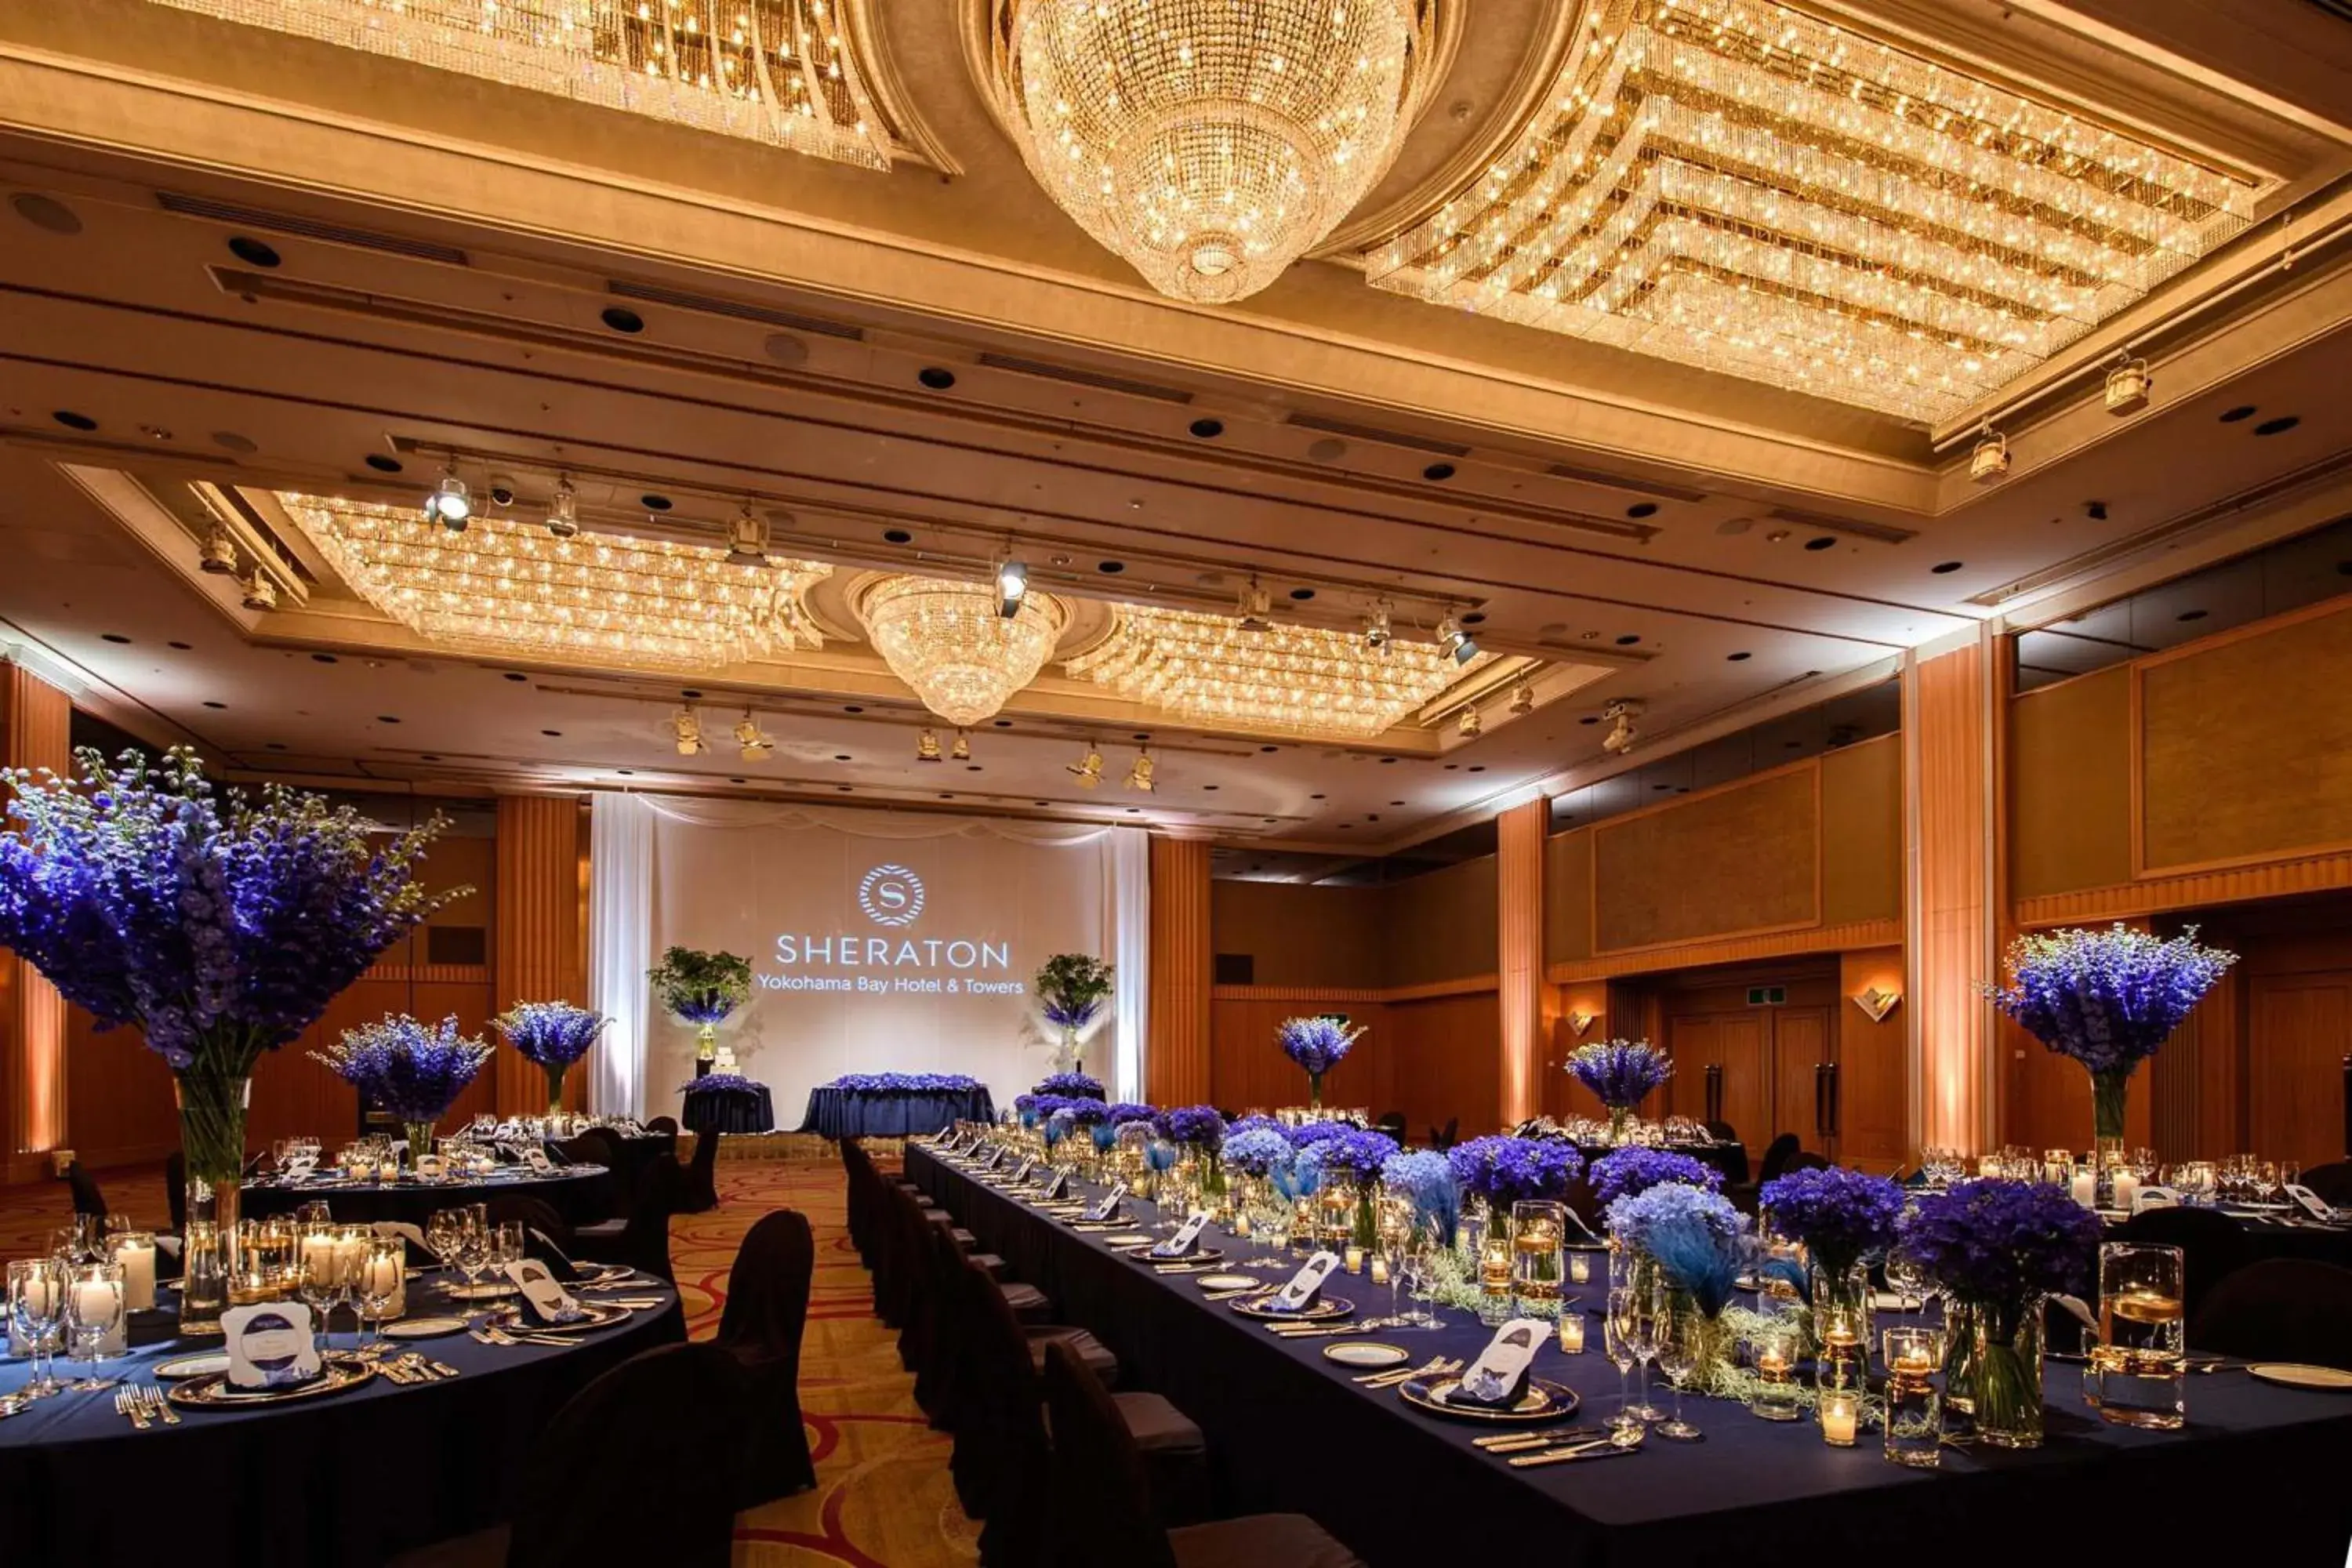 Banquet/Function facilities, Banquet Facilities in Yokohama Bay Sheraton Hotel and Towers